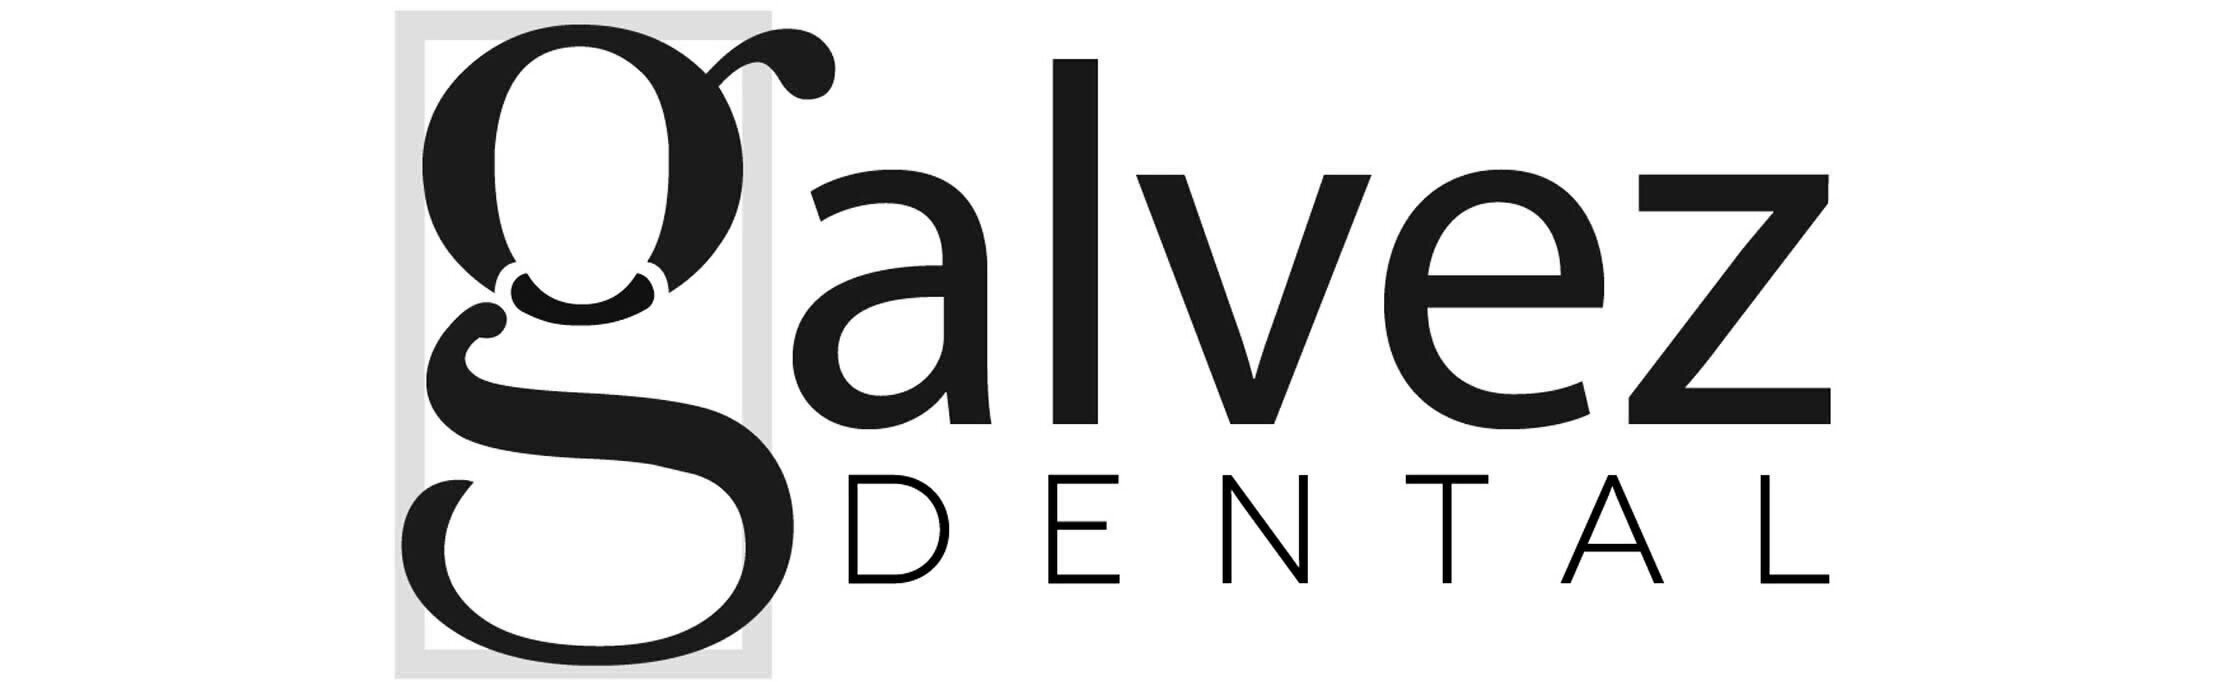 Galvez Dental